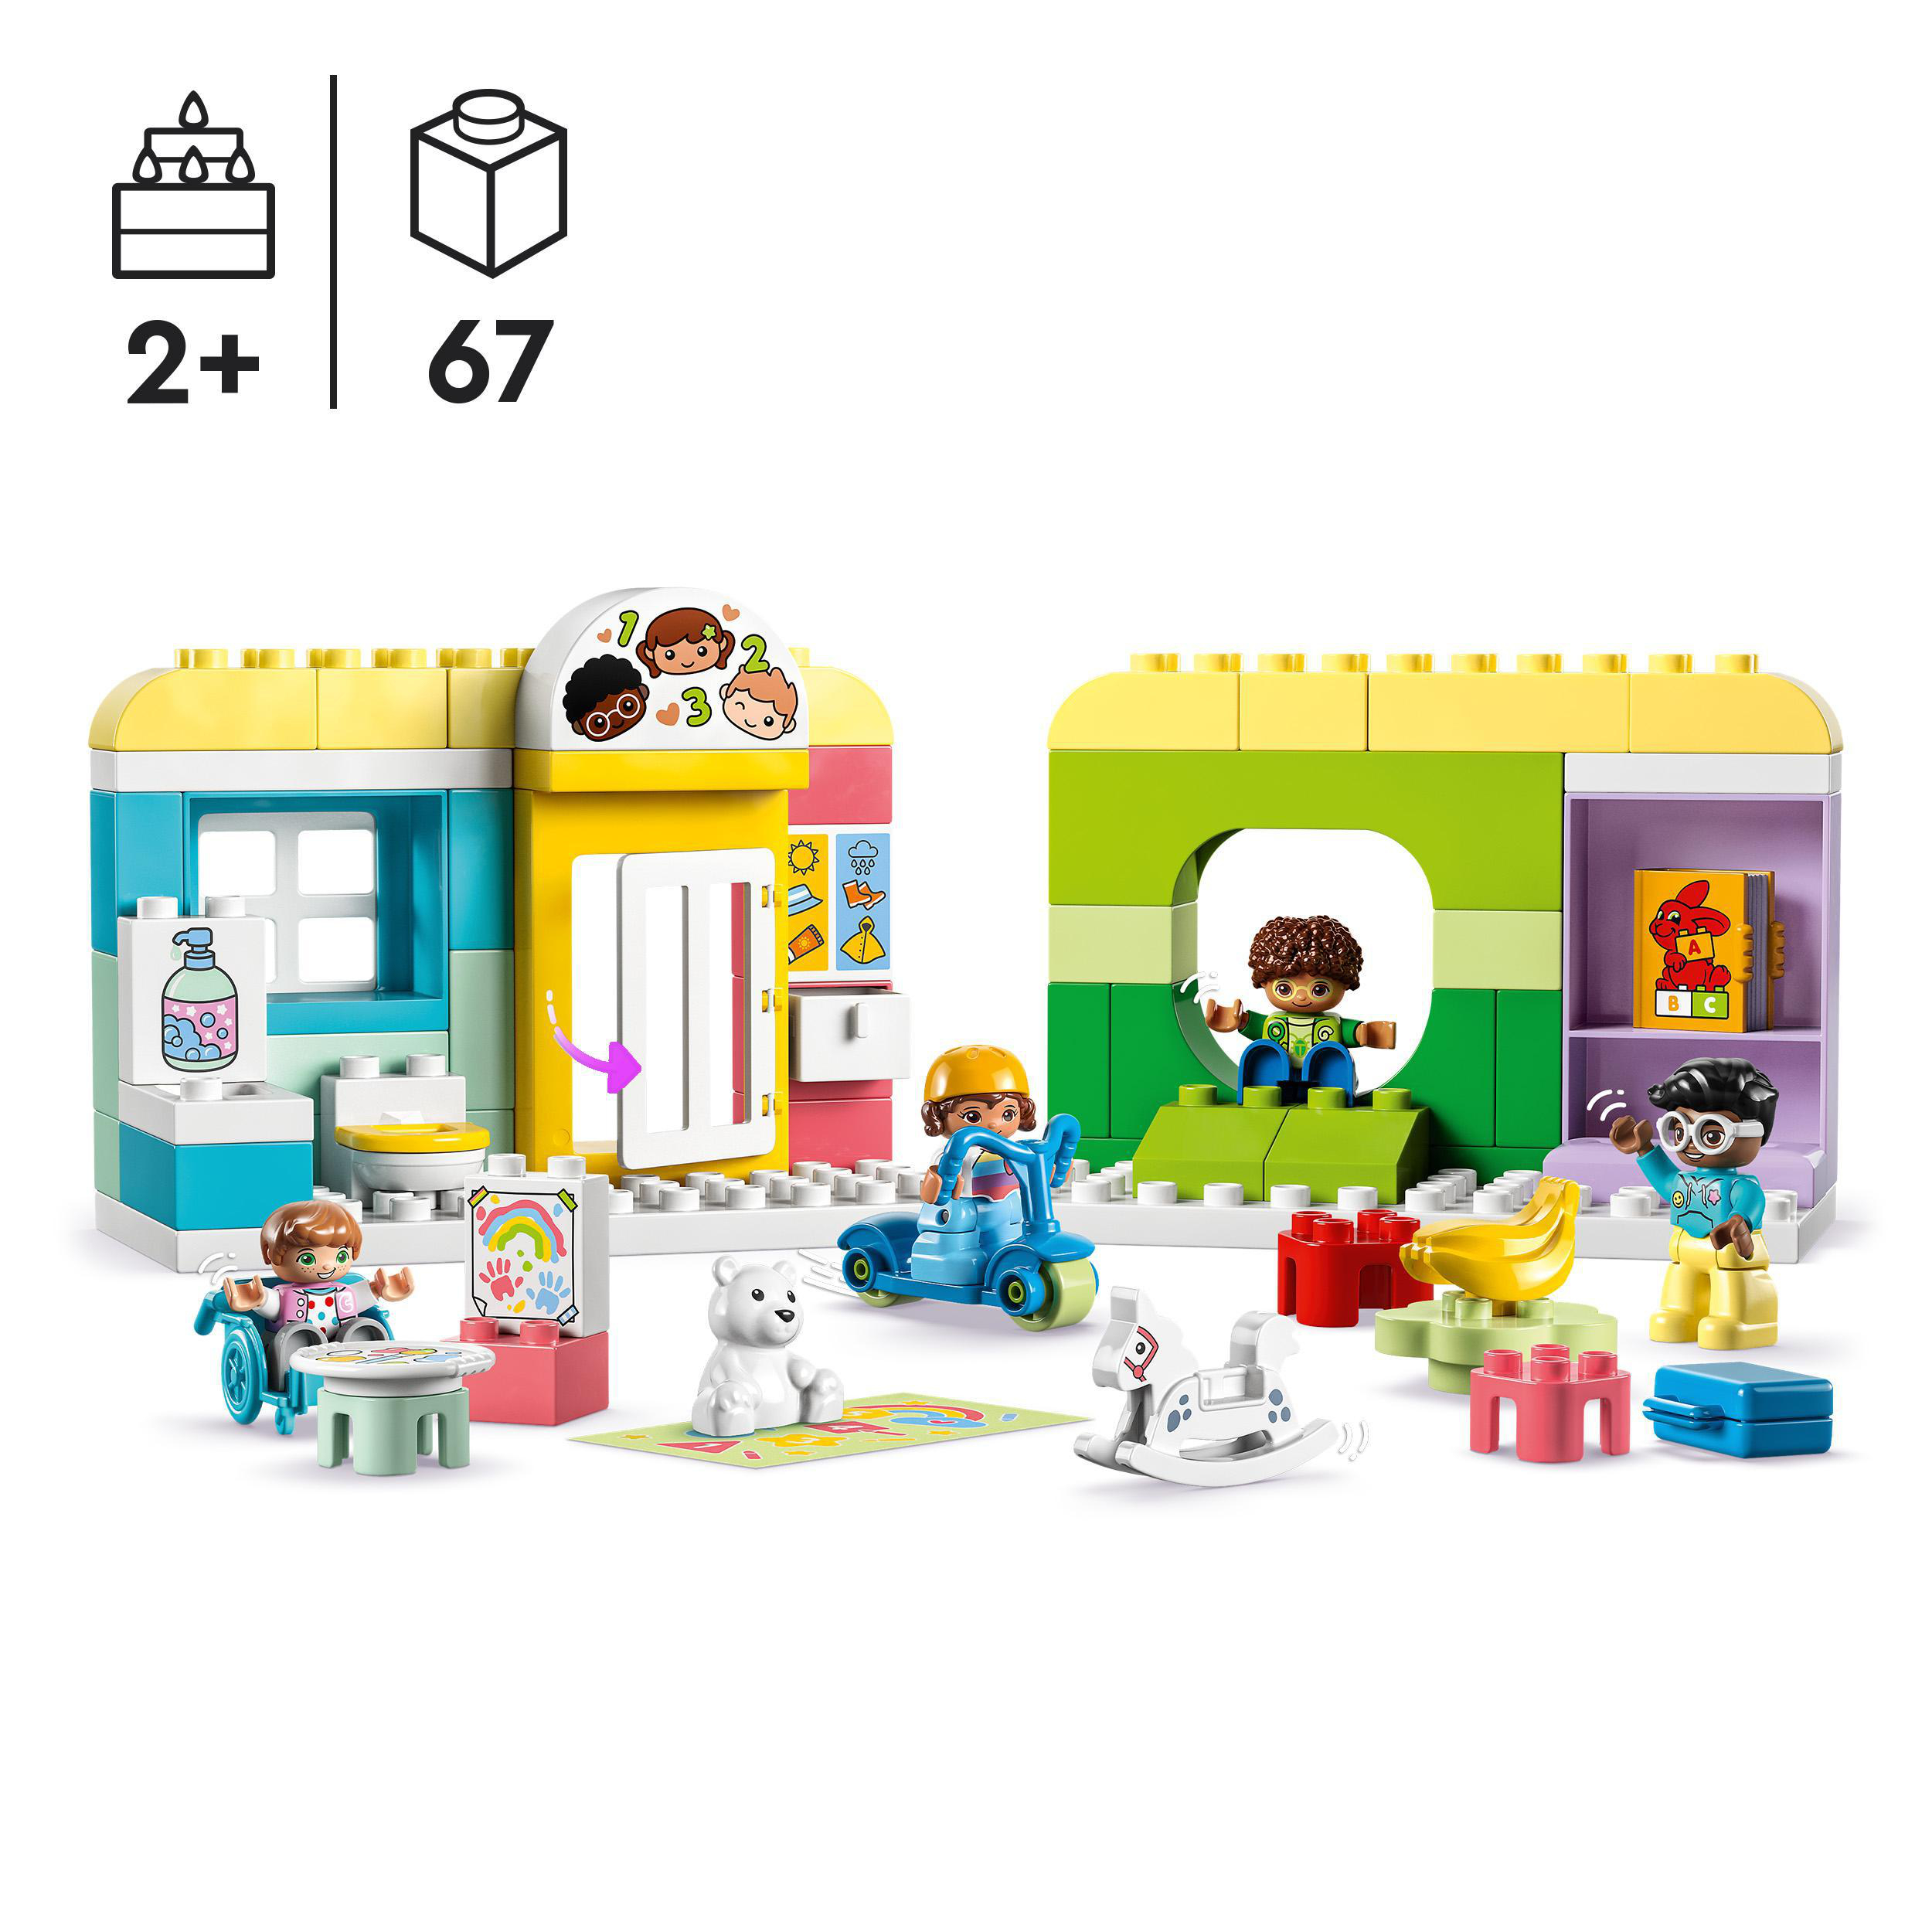 LEGO DUPLO 10992 der in Mehrfarbig Bausatz, Spielspaß Kita